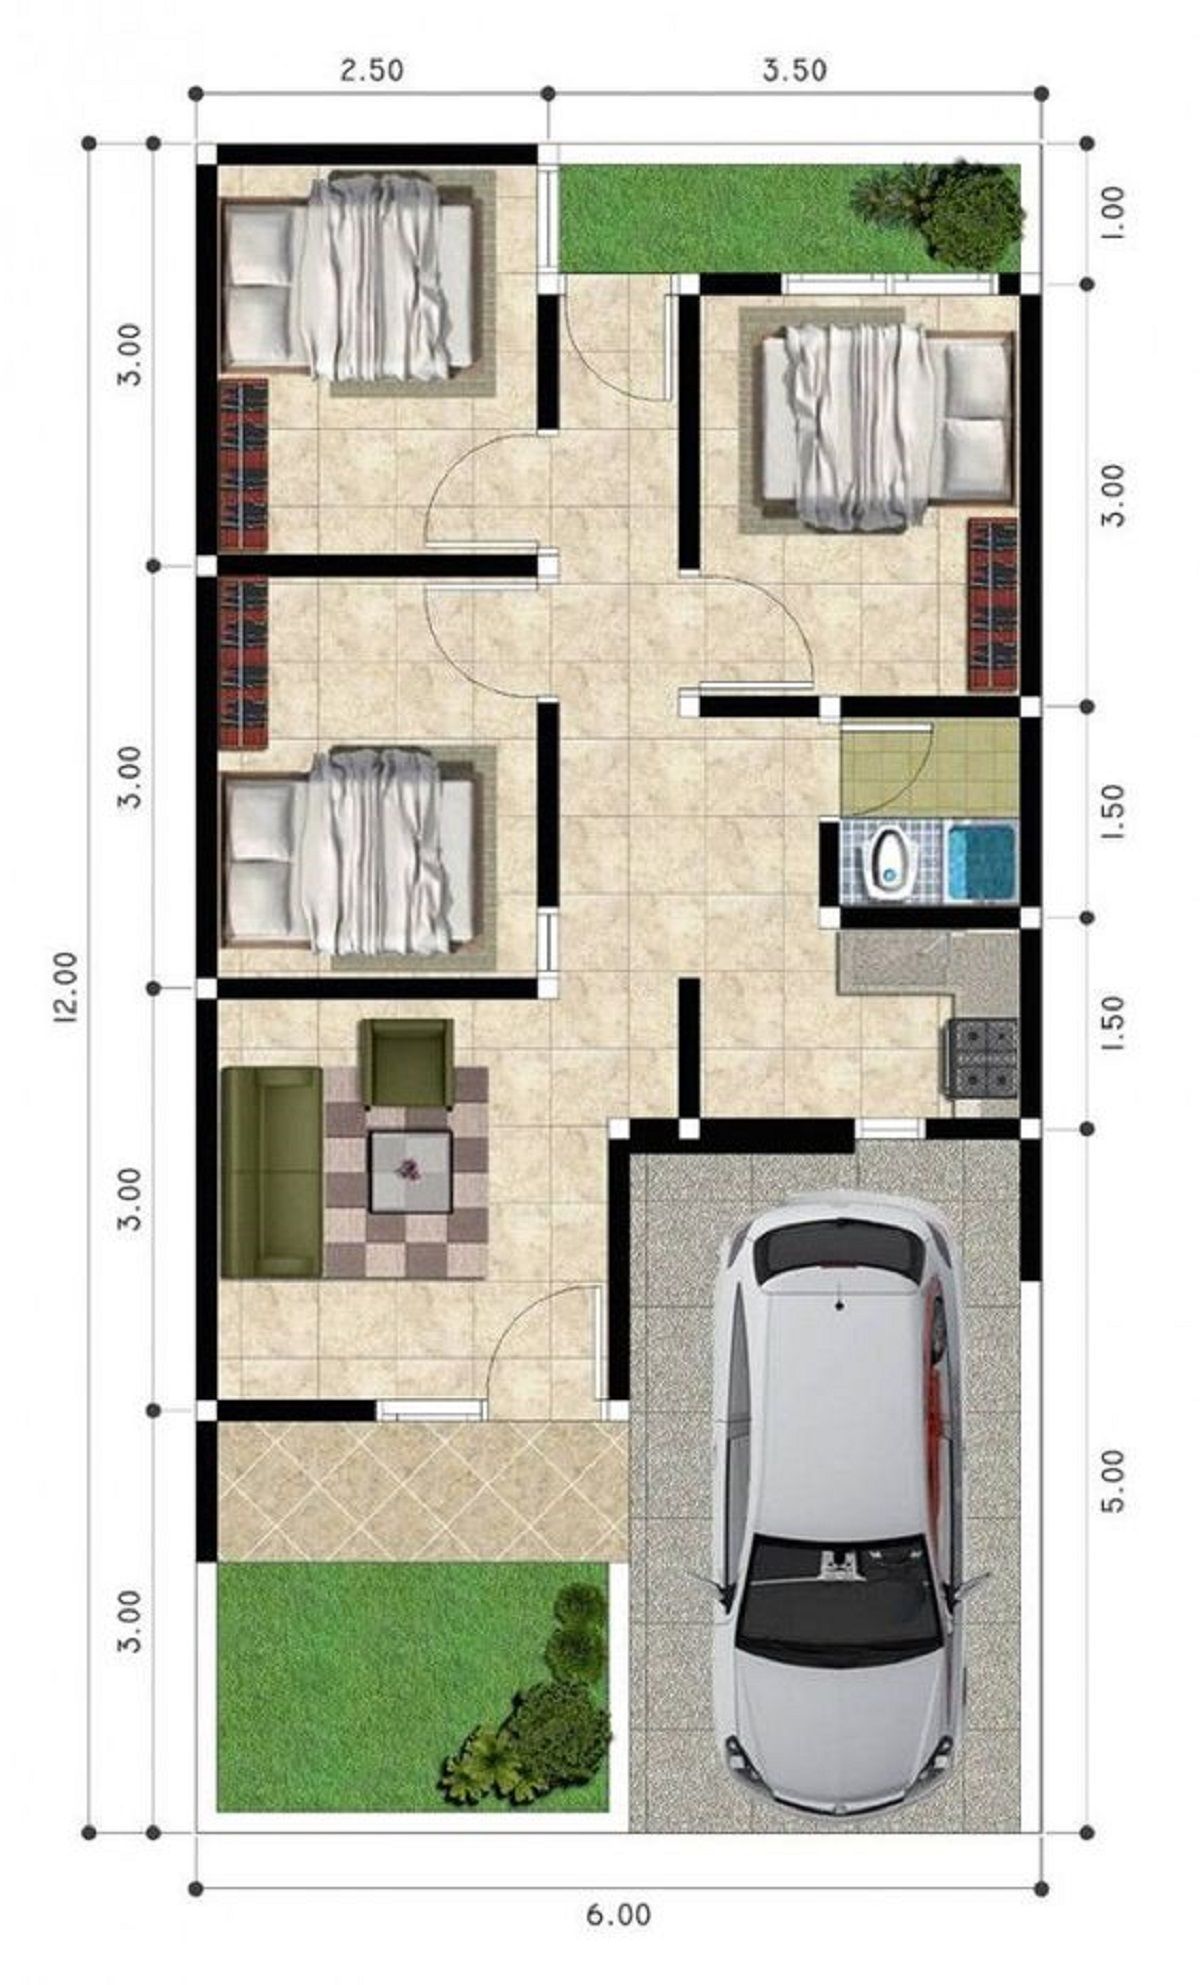 Desain Rumah Minimalis 3 Kamar Konsep Ruangan Berhadapan/mitra10